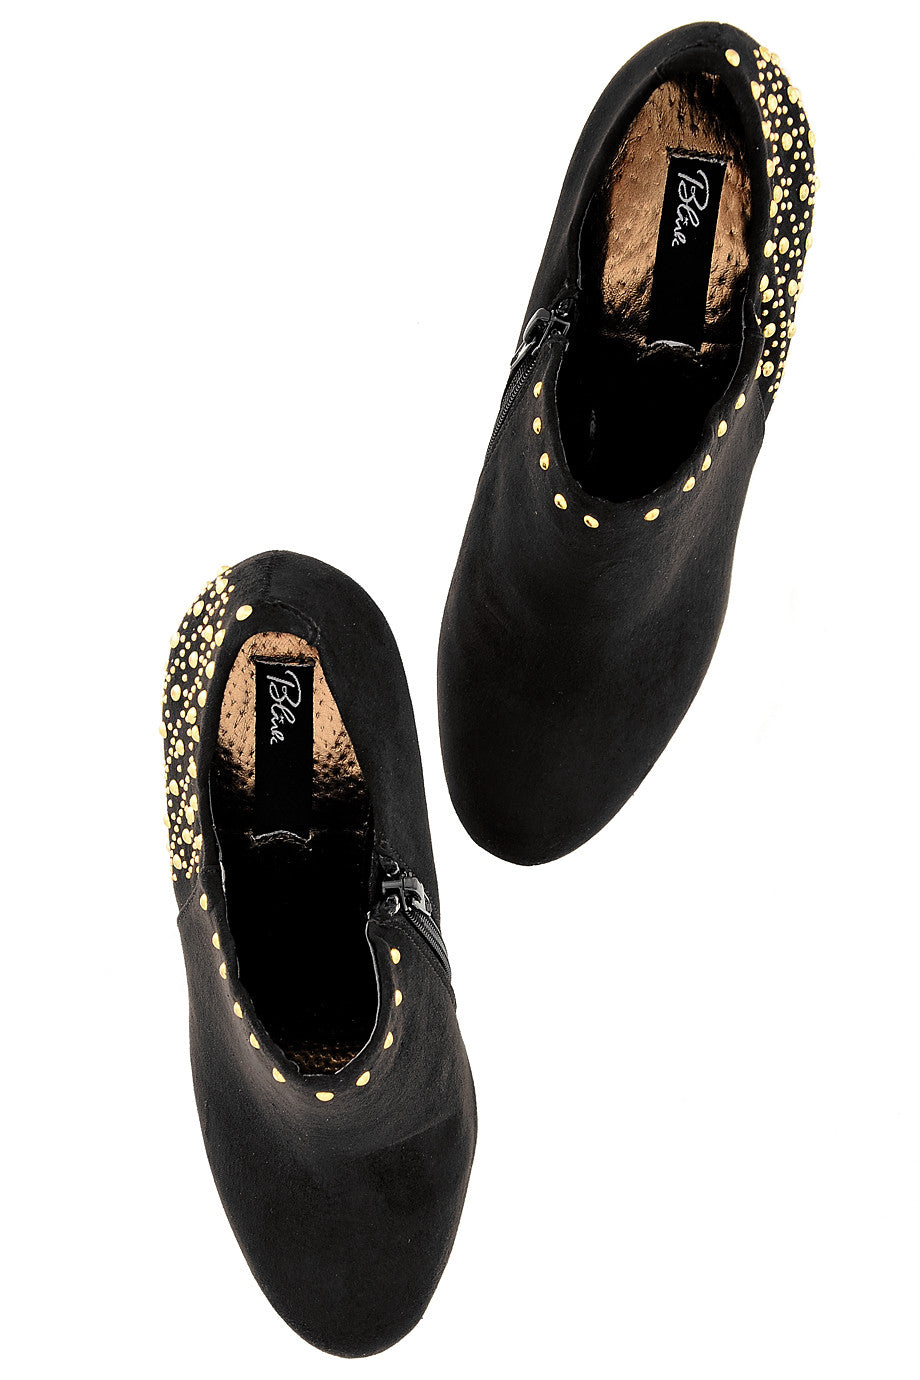 Μαύρα Καστόρινα Μποτάκια με Τρουκς - Blink | Γυναικεία Παπούτσια